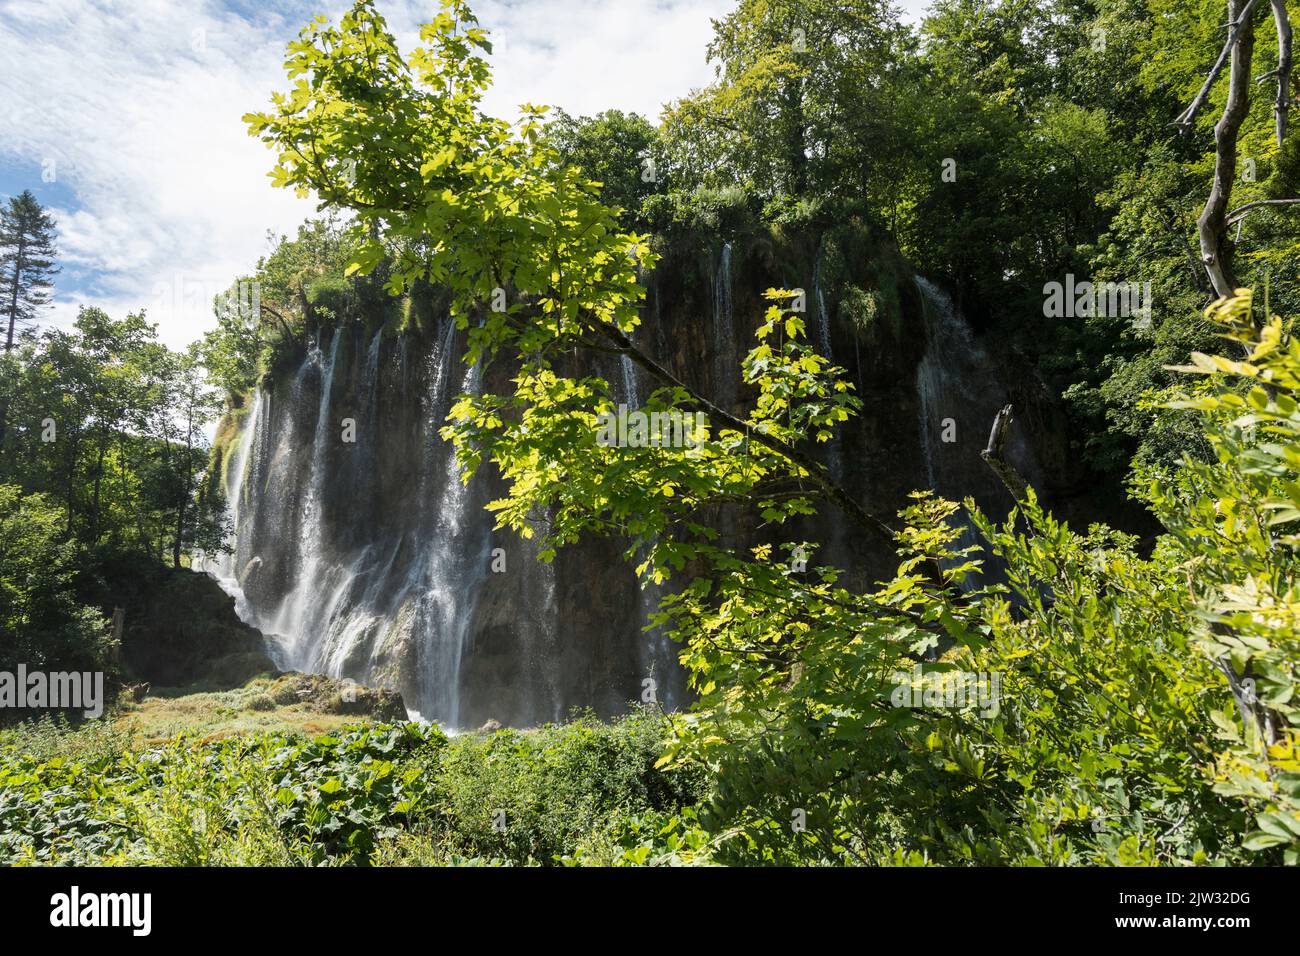 Agua que cae de las rocas de una de las muchas cascadas en el Parque Nacional de los Lagos de Plitvice, Croacia, Europa. Foto de stock